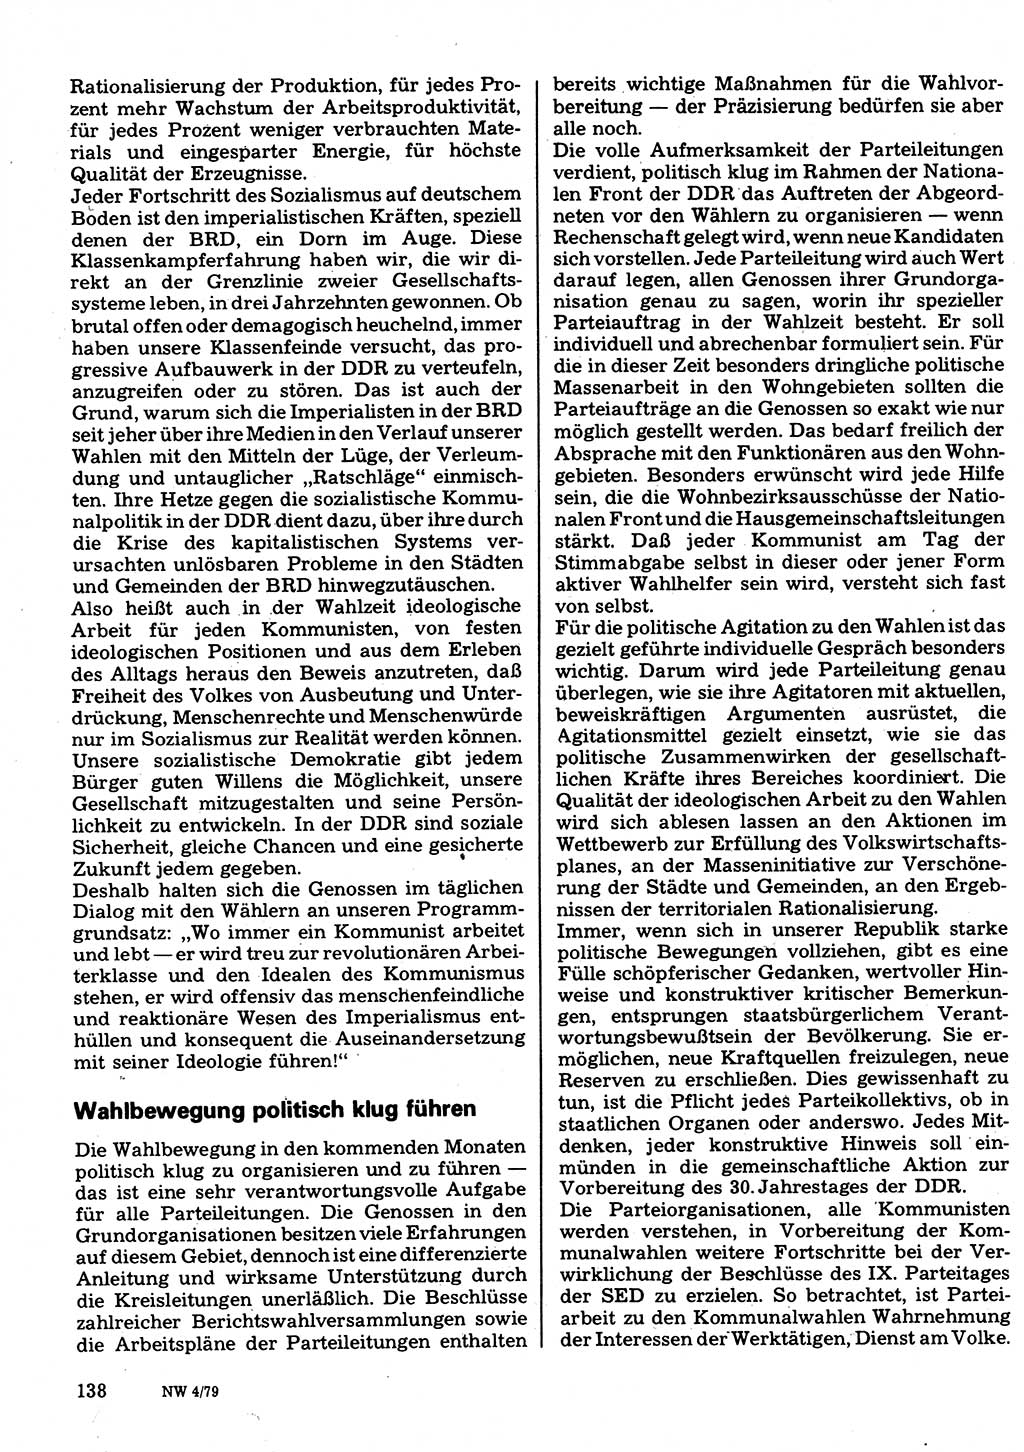 Neuer Weg (NW), Organ des Zentralkomitees (ZK) der SED (Sozialistische Einheitspartei Deutschlands) für Fragen des Parteilebens, 34. Jahrgang [Deutsche Demokratische Republik (DDR)] 1979, Seite 138 (NW ZK SED DDR 1979, S. 138)